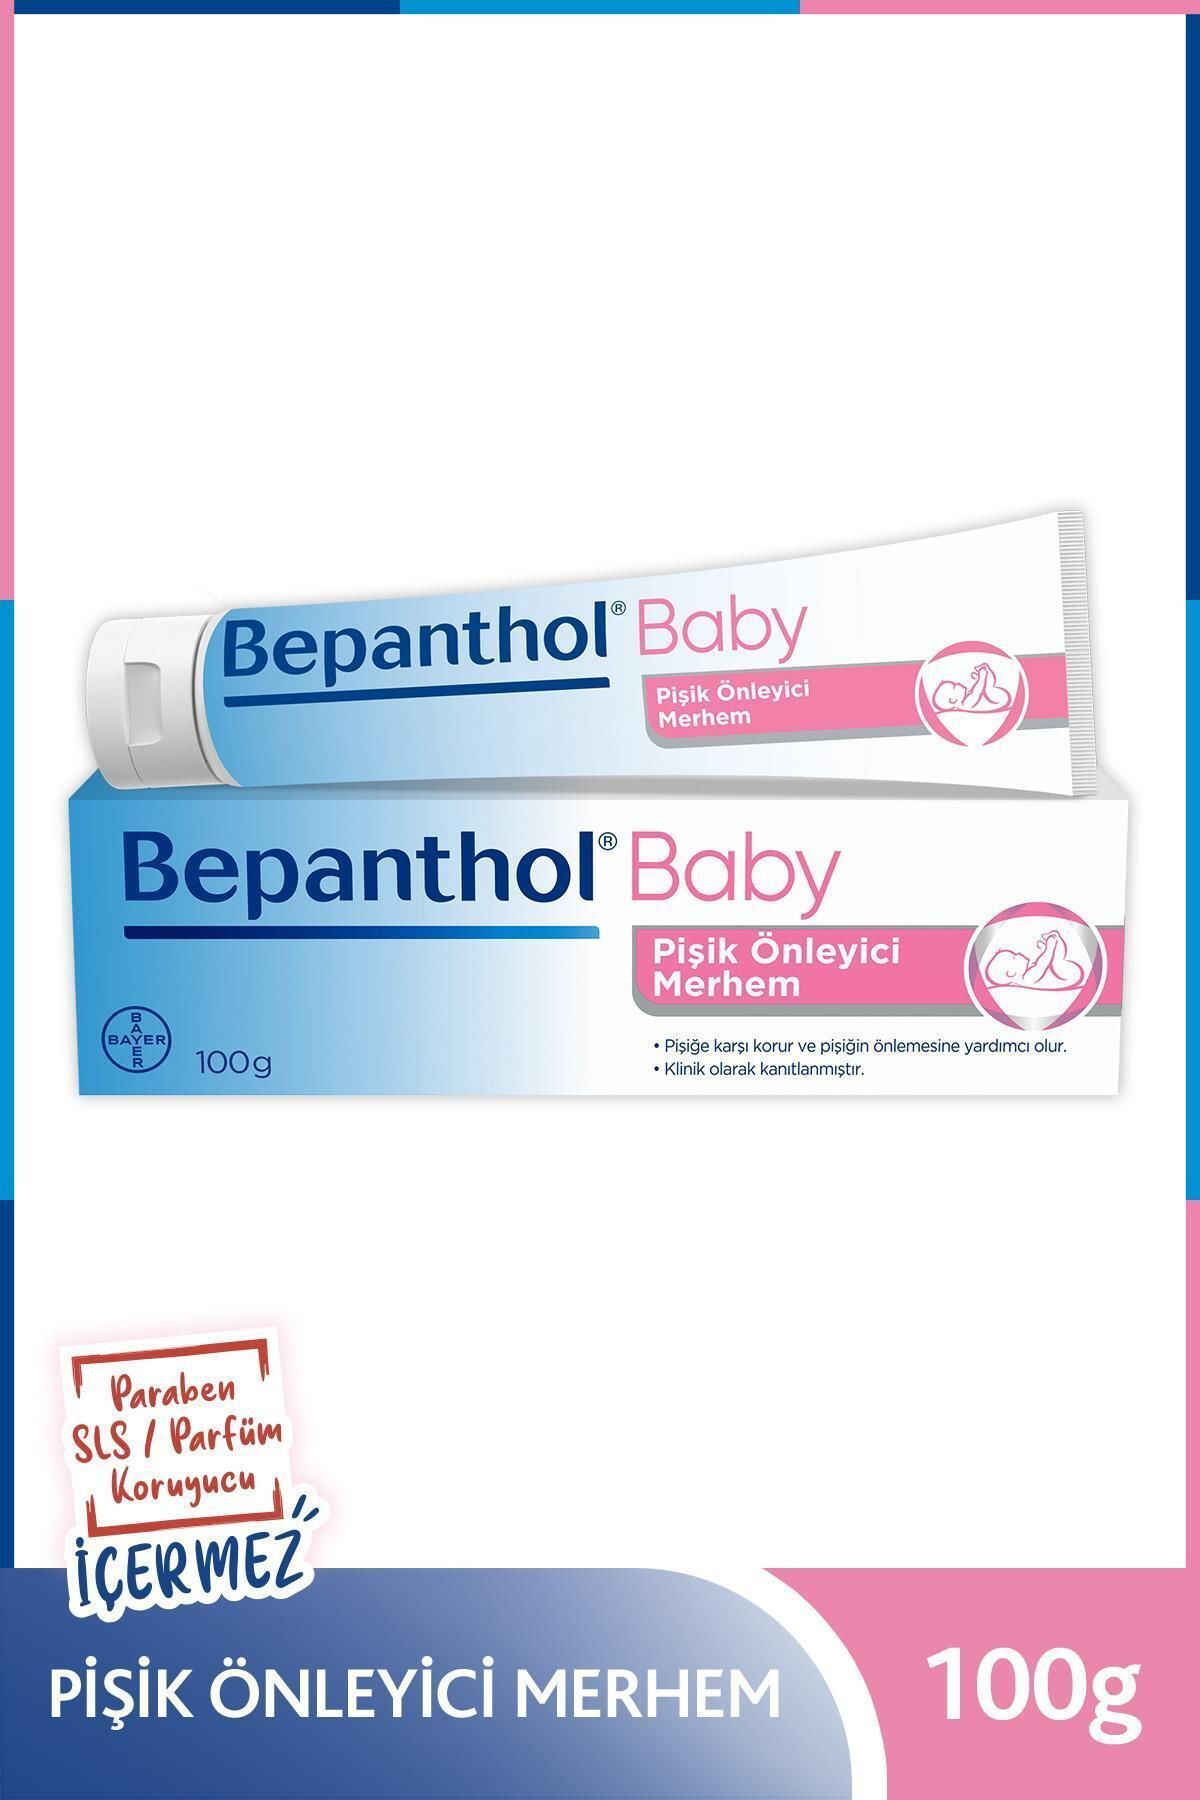 Bepanthol Baby Pişik Önleyici Merhem 100gr L Parapen, Sls, Parfüm, Koruyucu Içermez